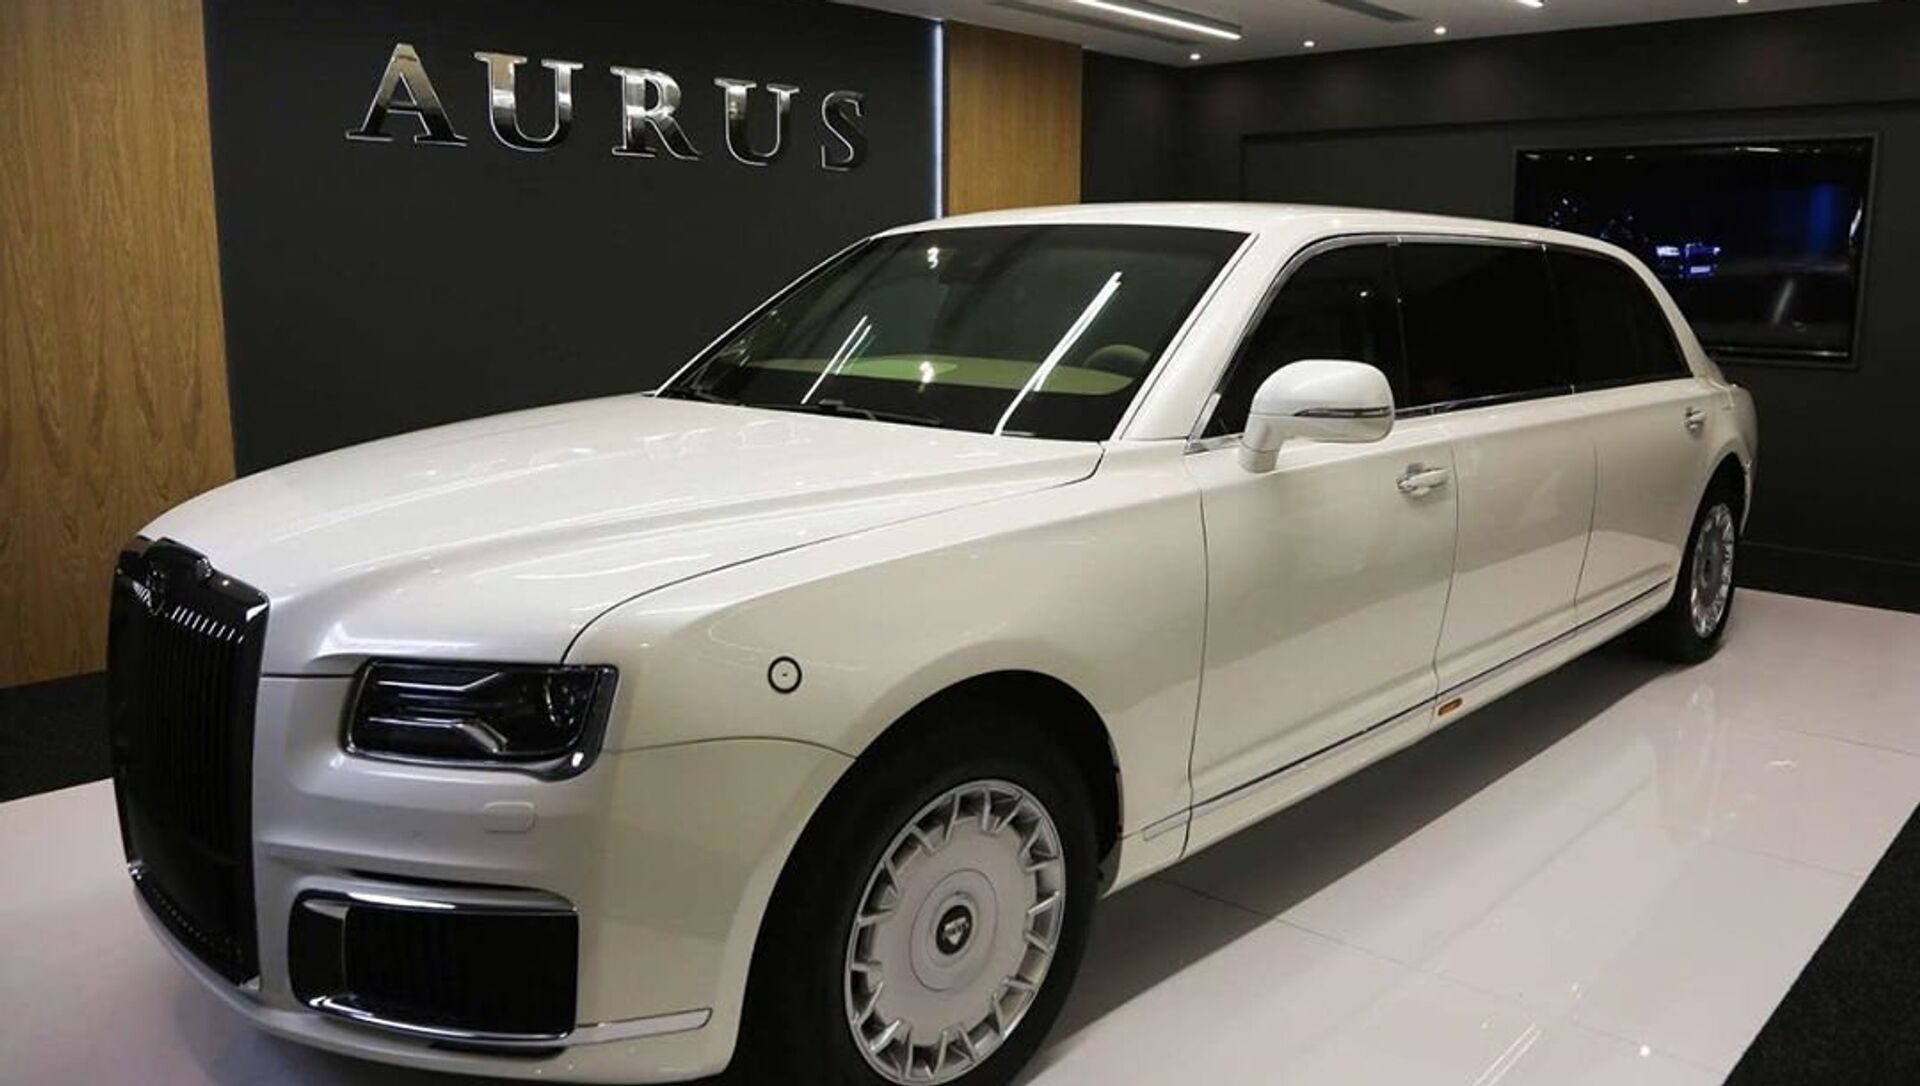 Saudi Arabia Energy Minister Mulls Buying New Russian Aurus Luxury